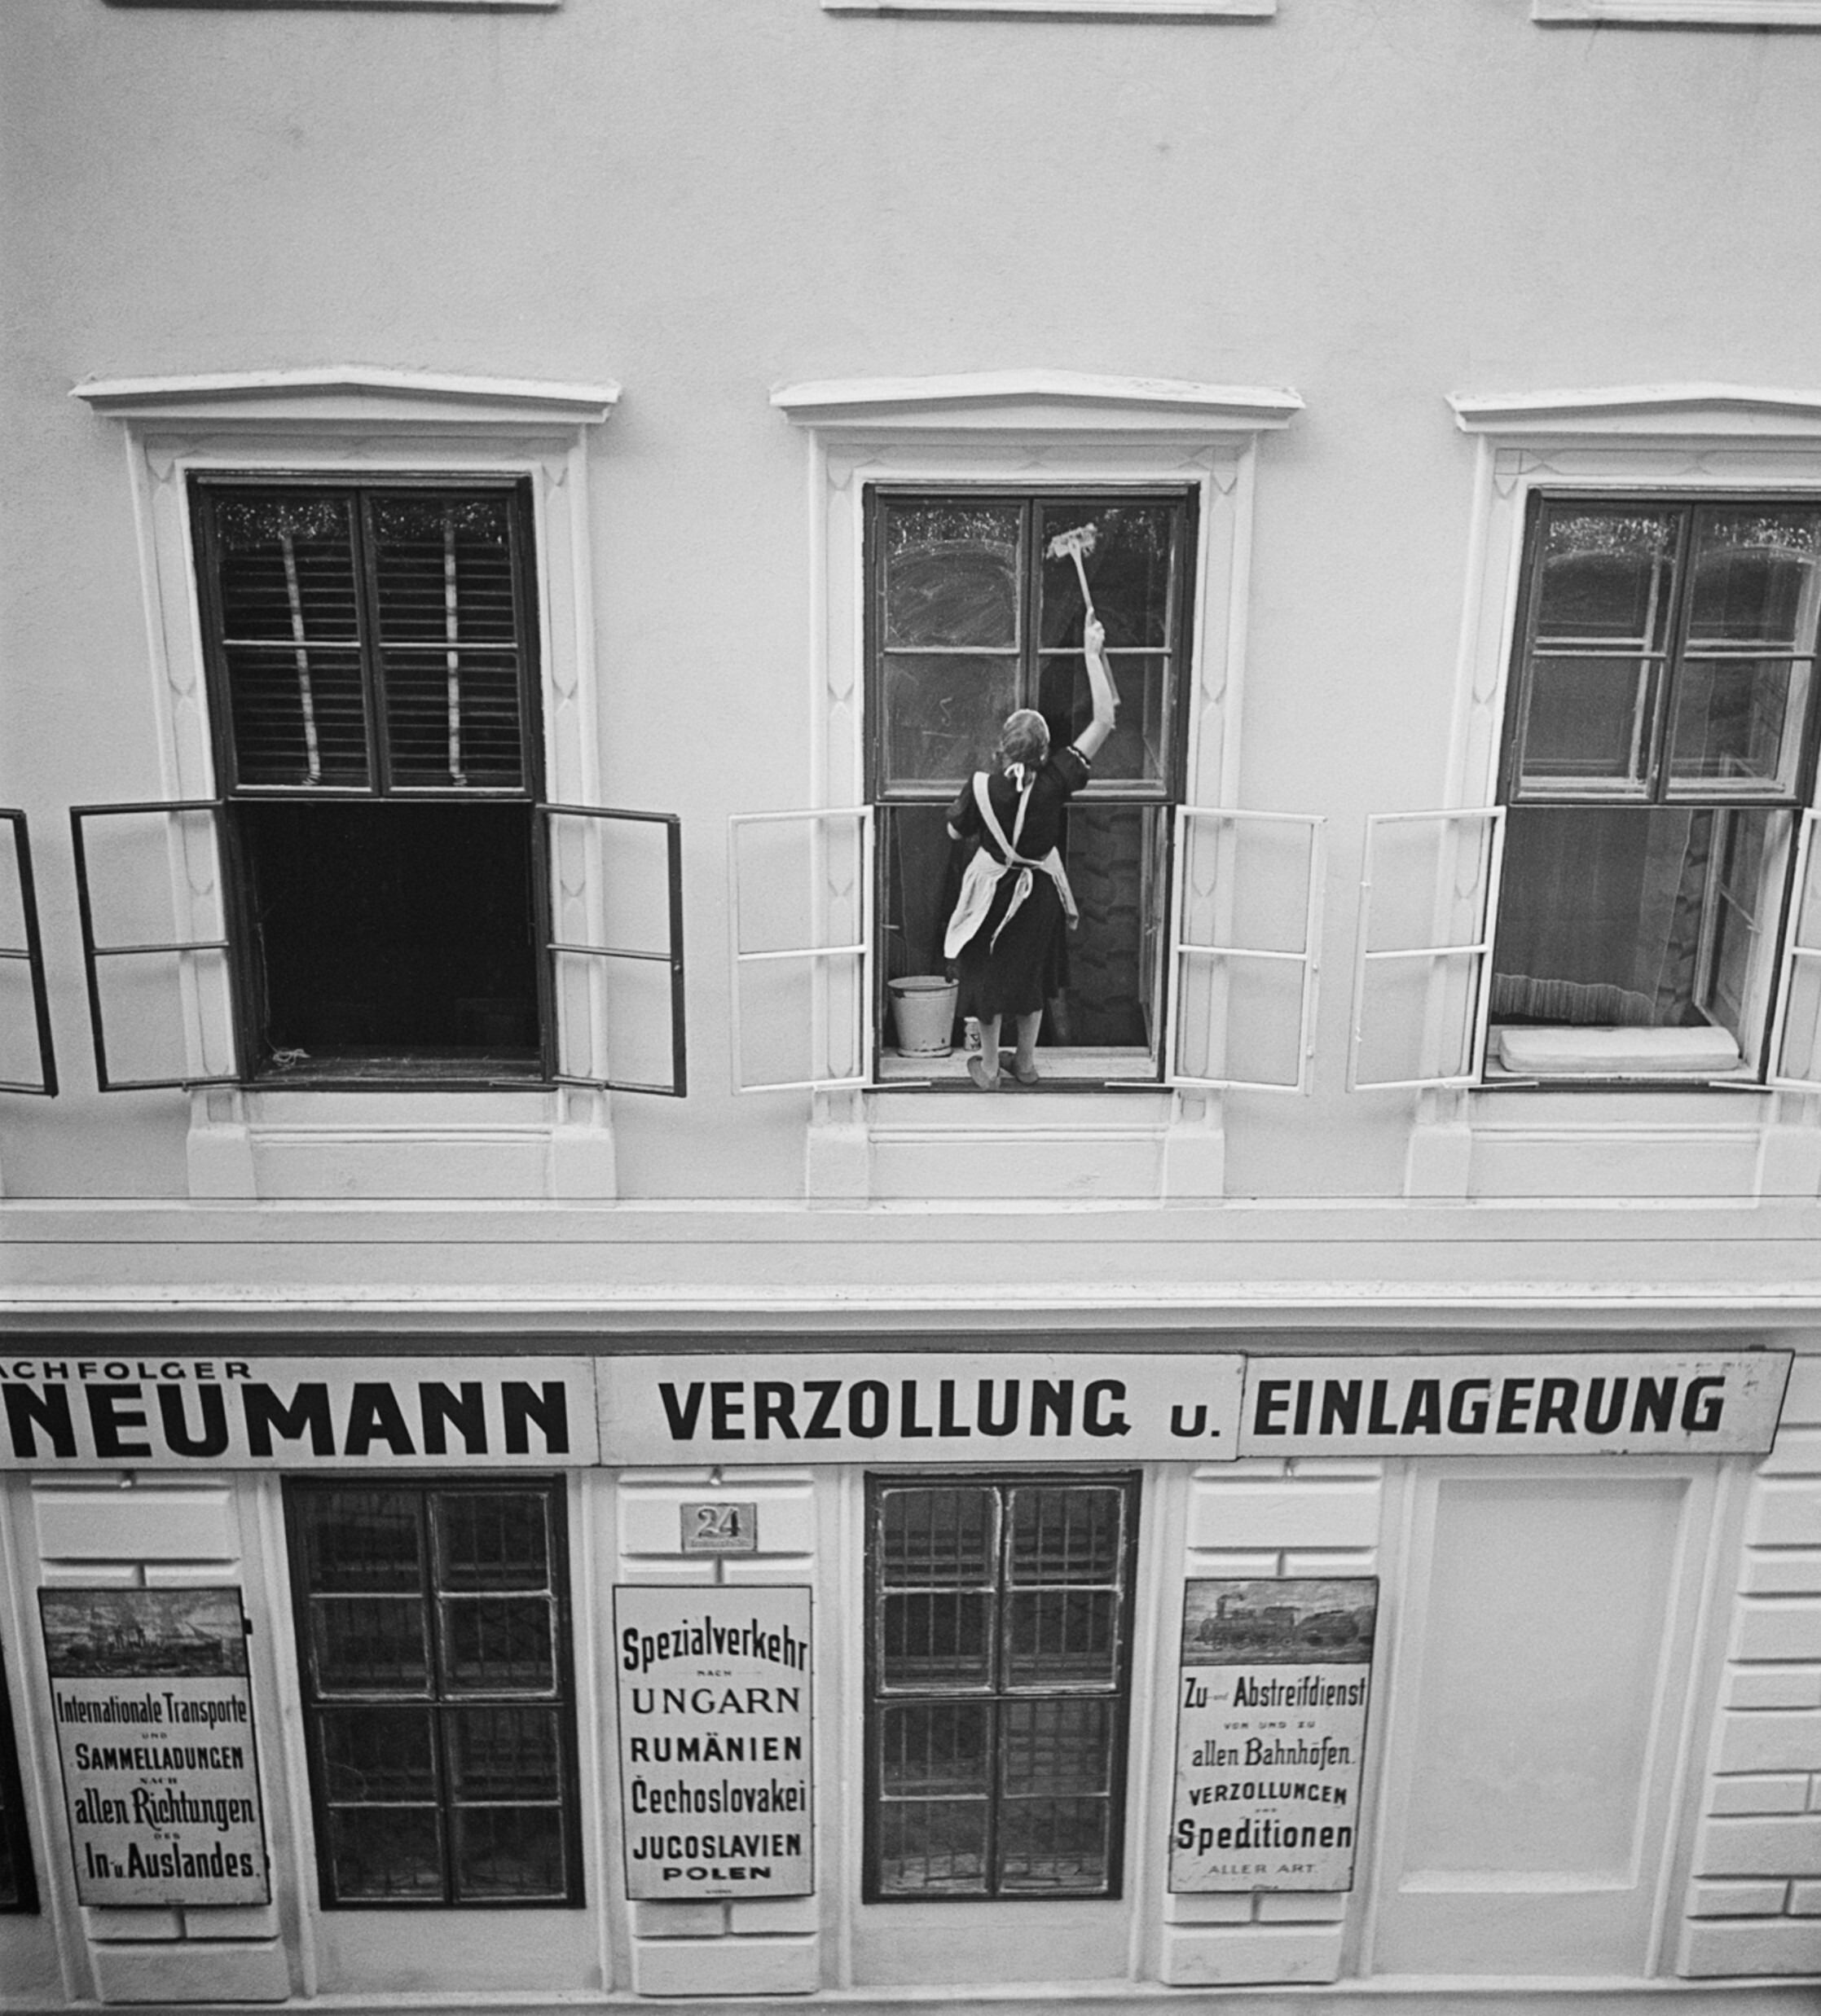 Женщина моет окна над Nachfolger Mandtler Neumann Speditionen (экспедиторские агенты Mandtler Neumann), Фердинандштрассе, Леопольдштадт, Вена, 1930-е годы. Фотограф Роман Вишняк